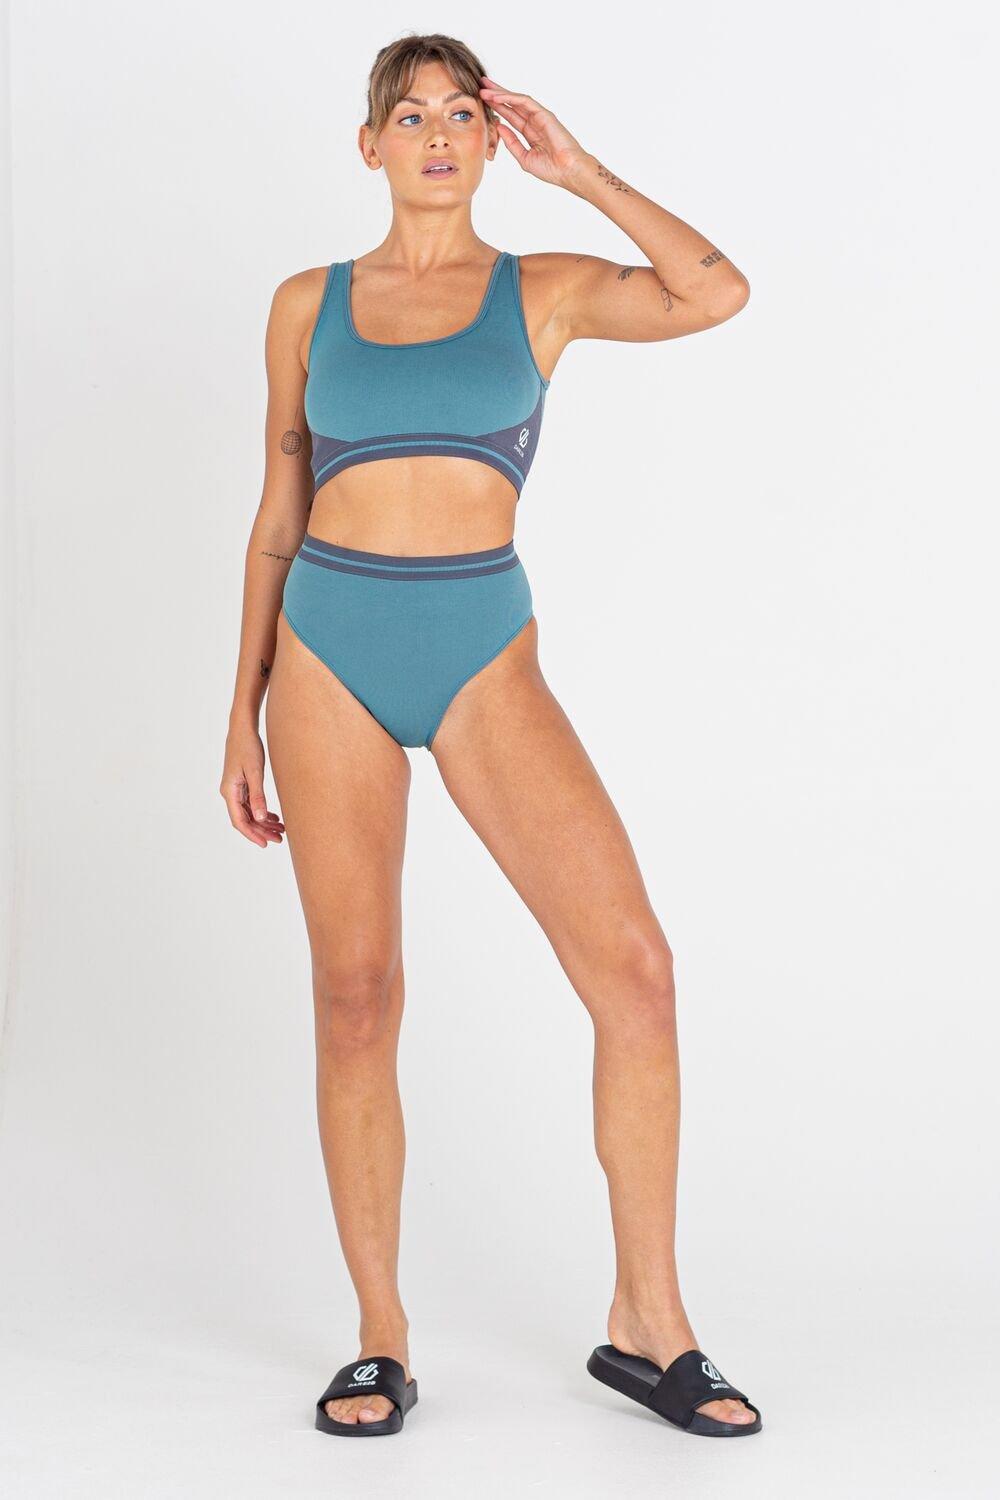 'Don't Sweat It' SeamSmart Technology Swimwear Top